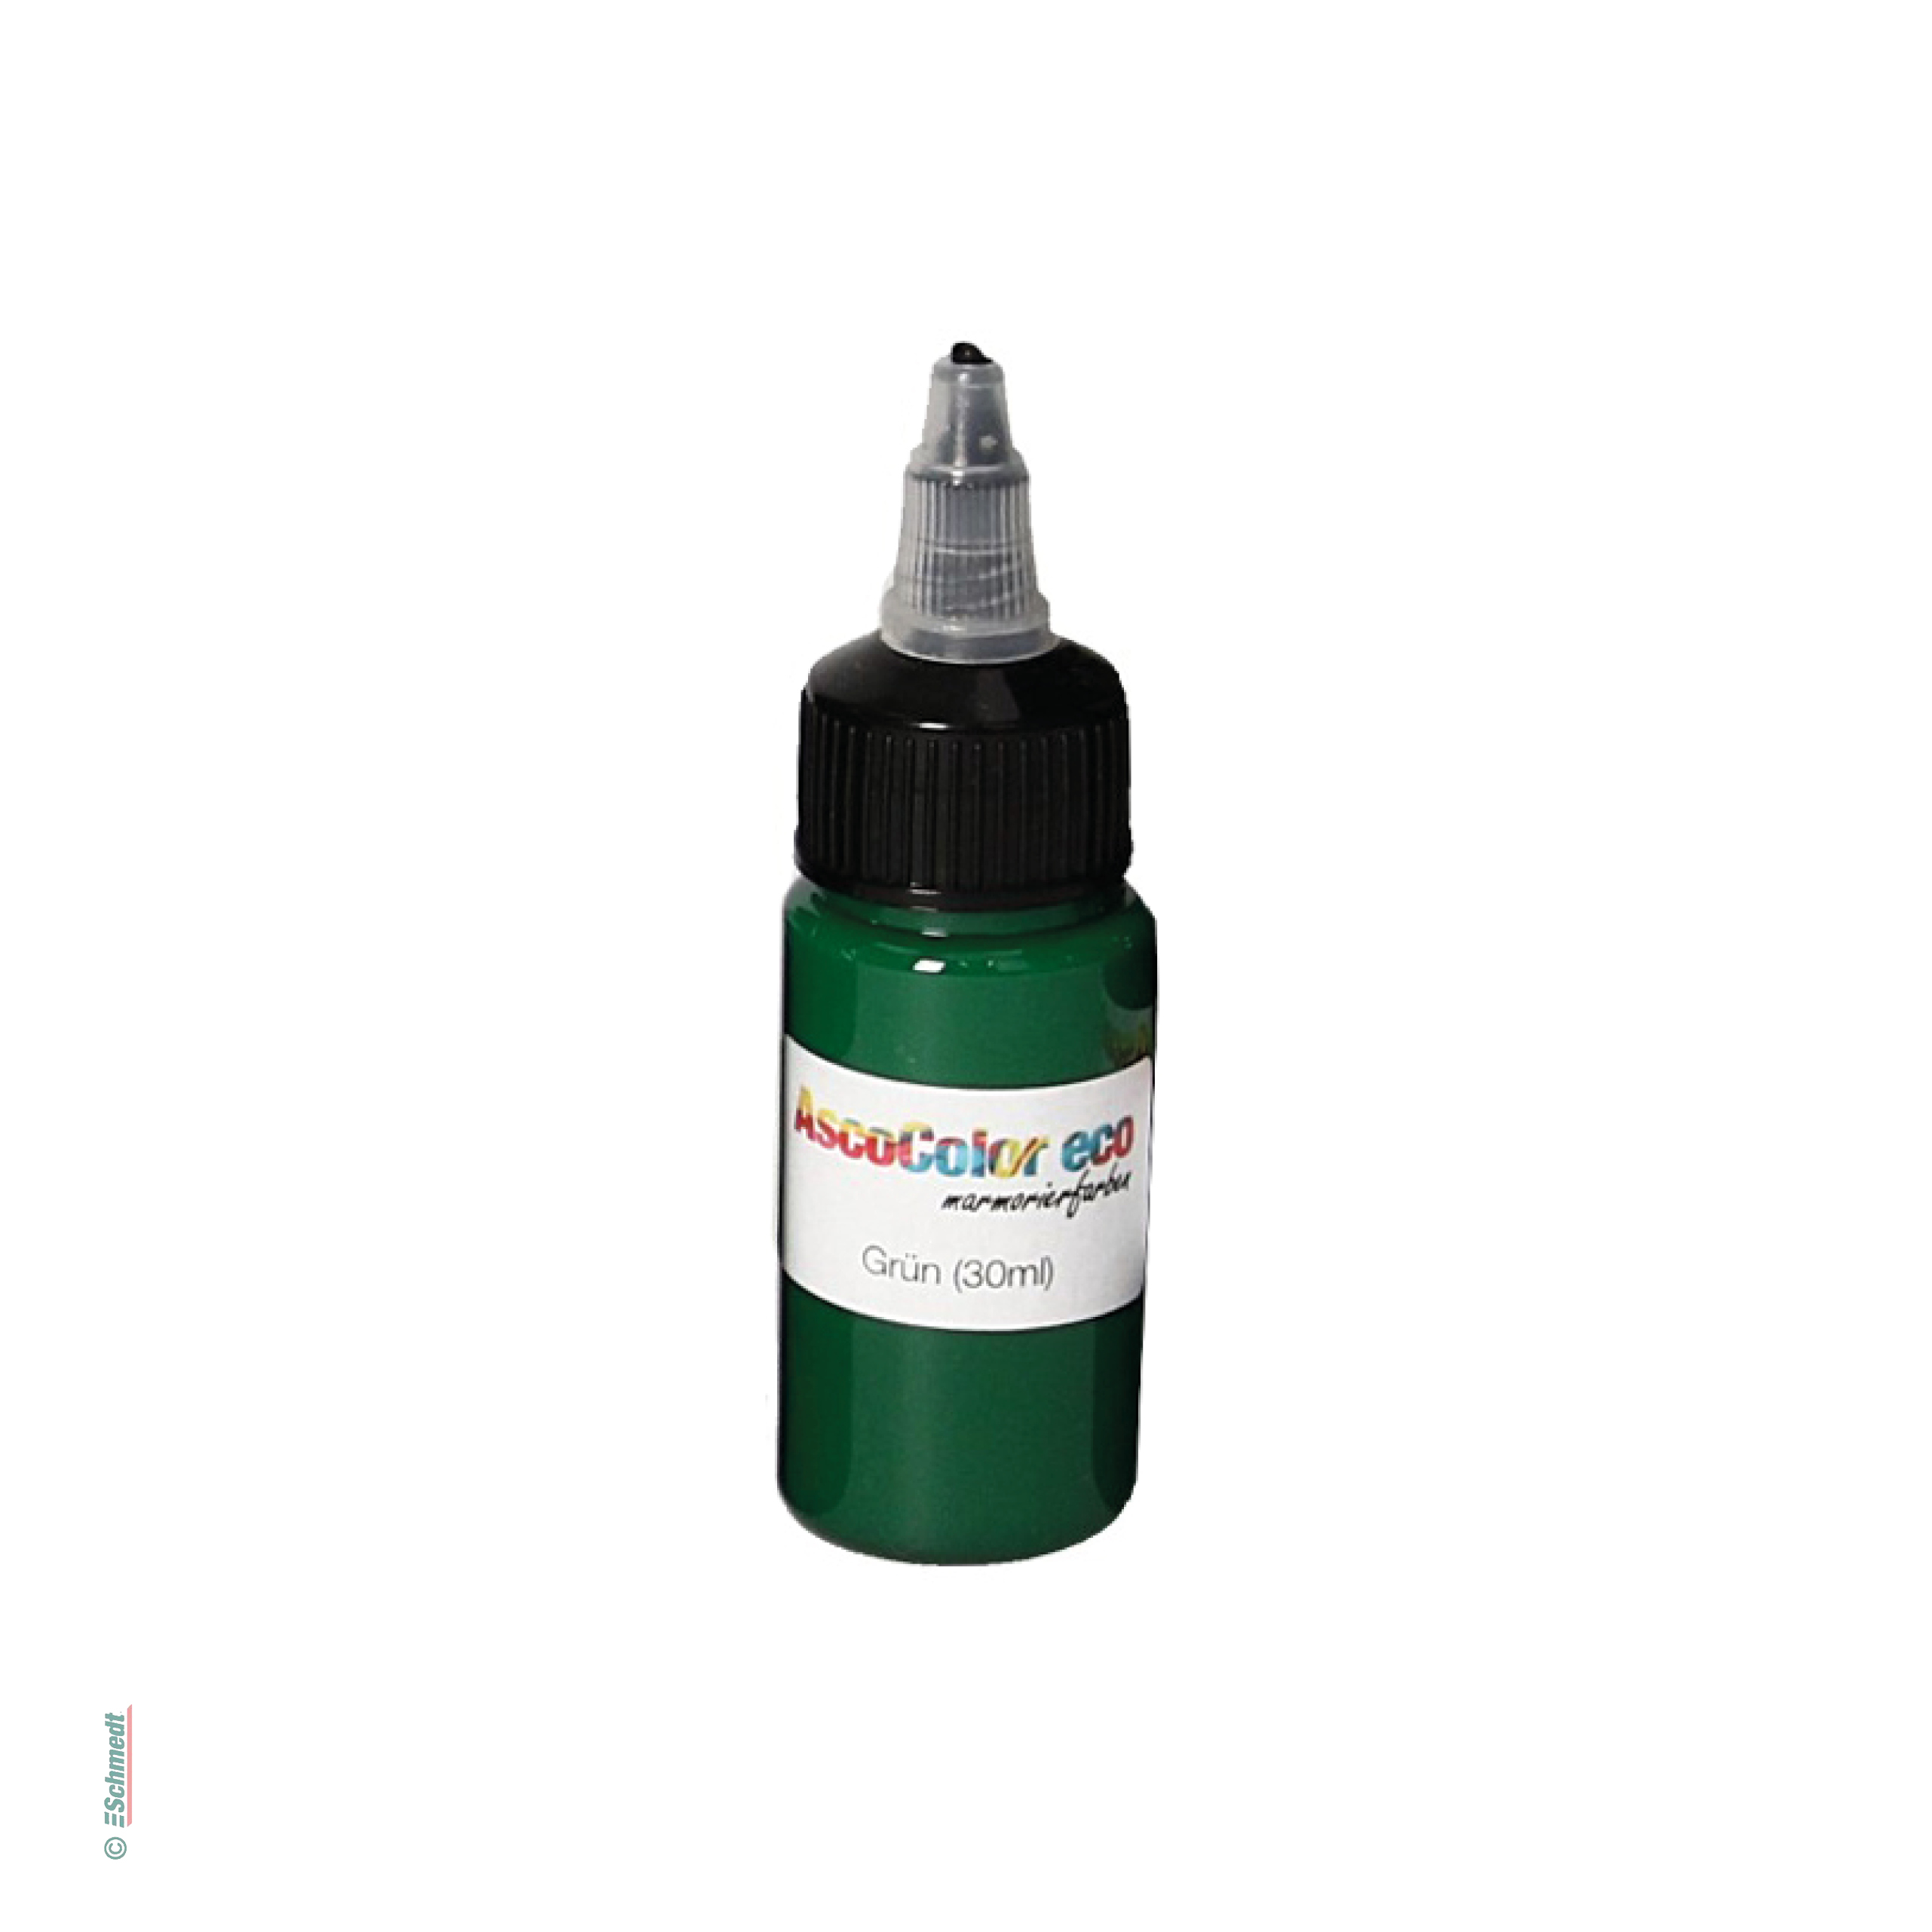 AscoColor eco - Marmorierfarbe - Farbe 107 - grün - Gebindegröße Flasche / 30 ml - zur Herstellung marmorierter Papiere...